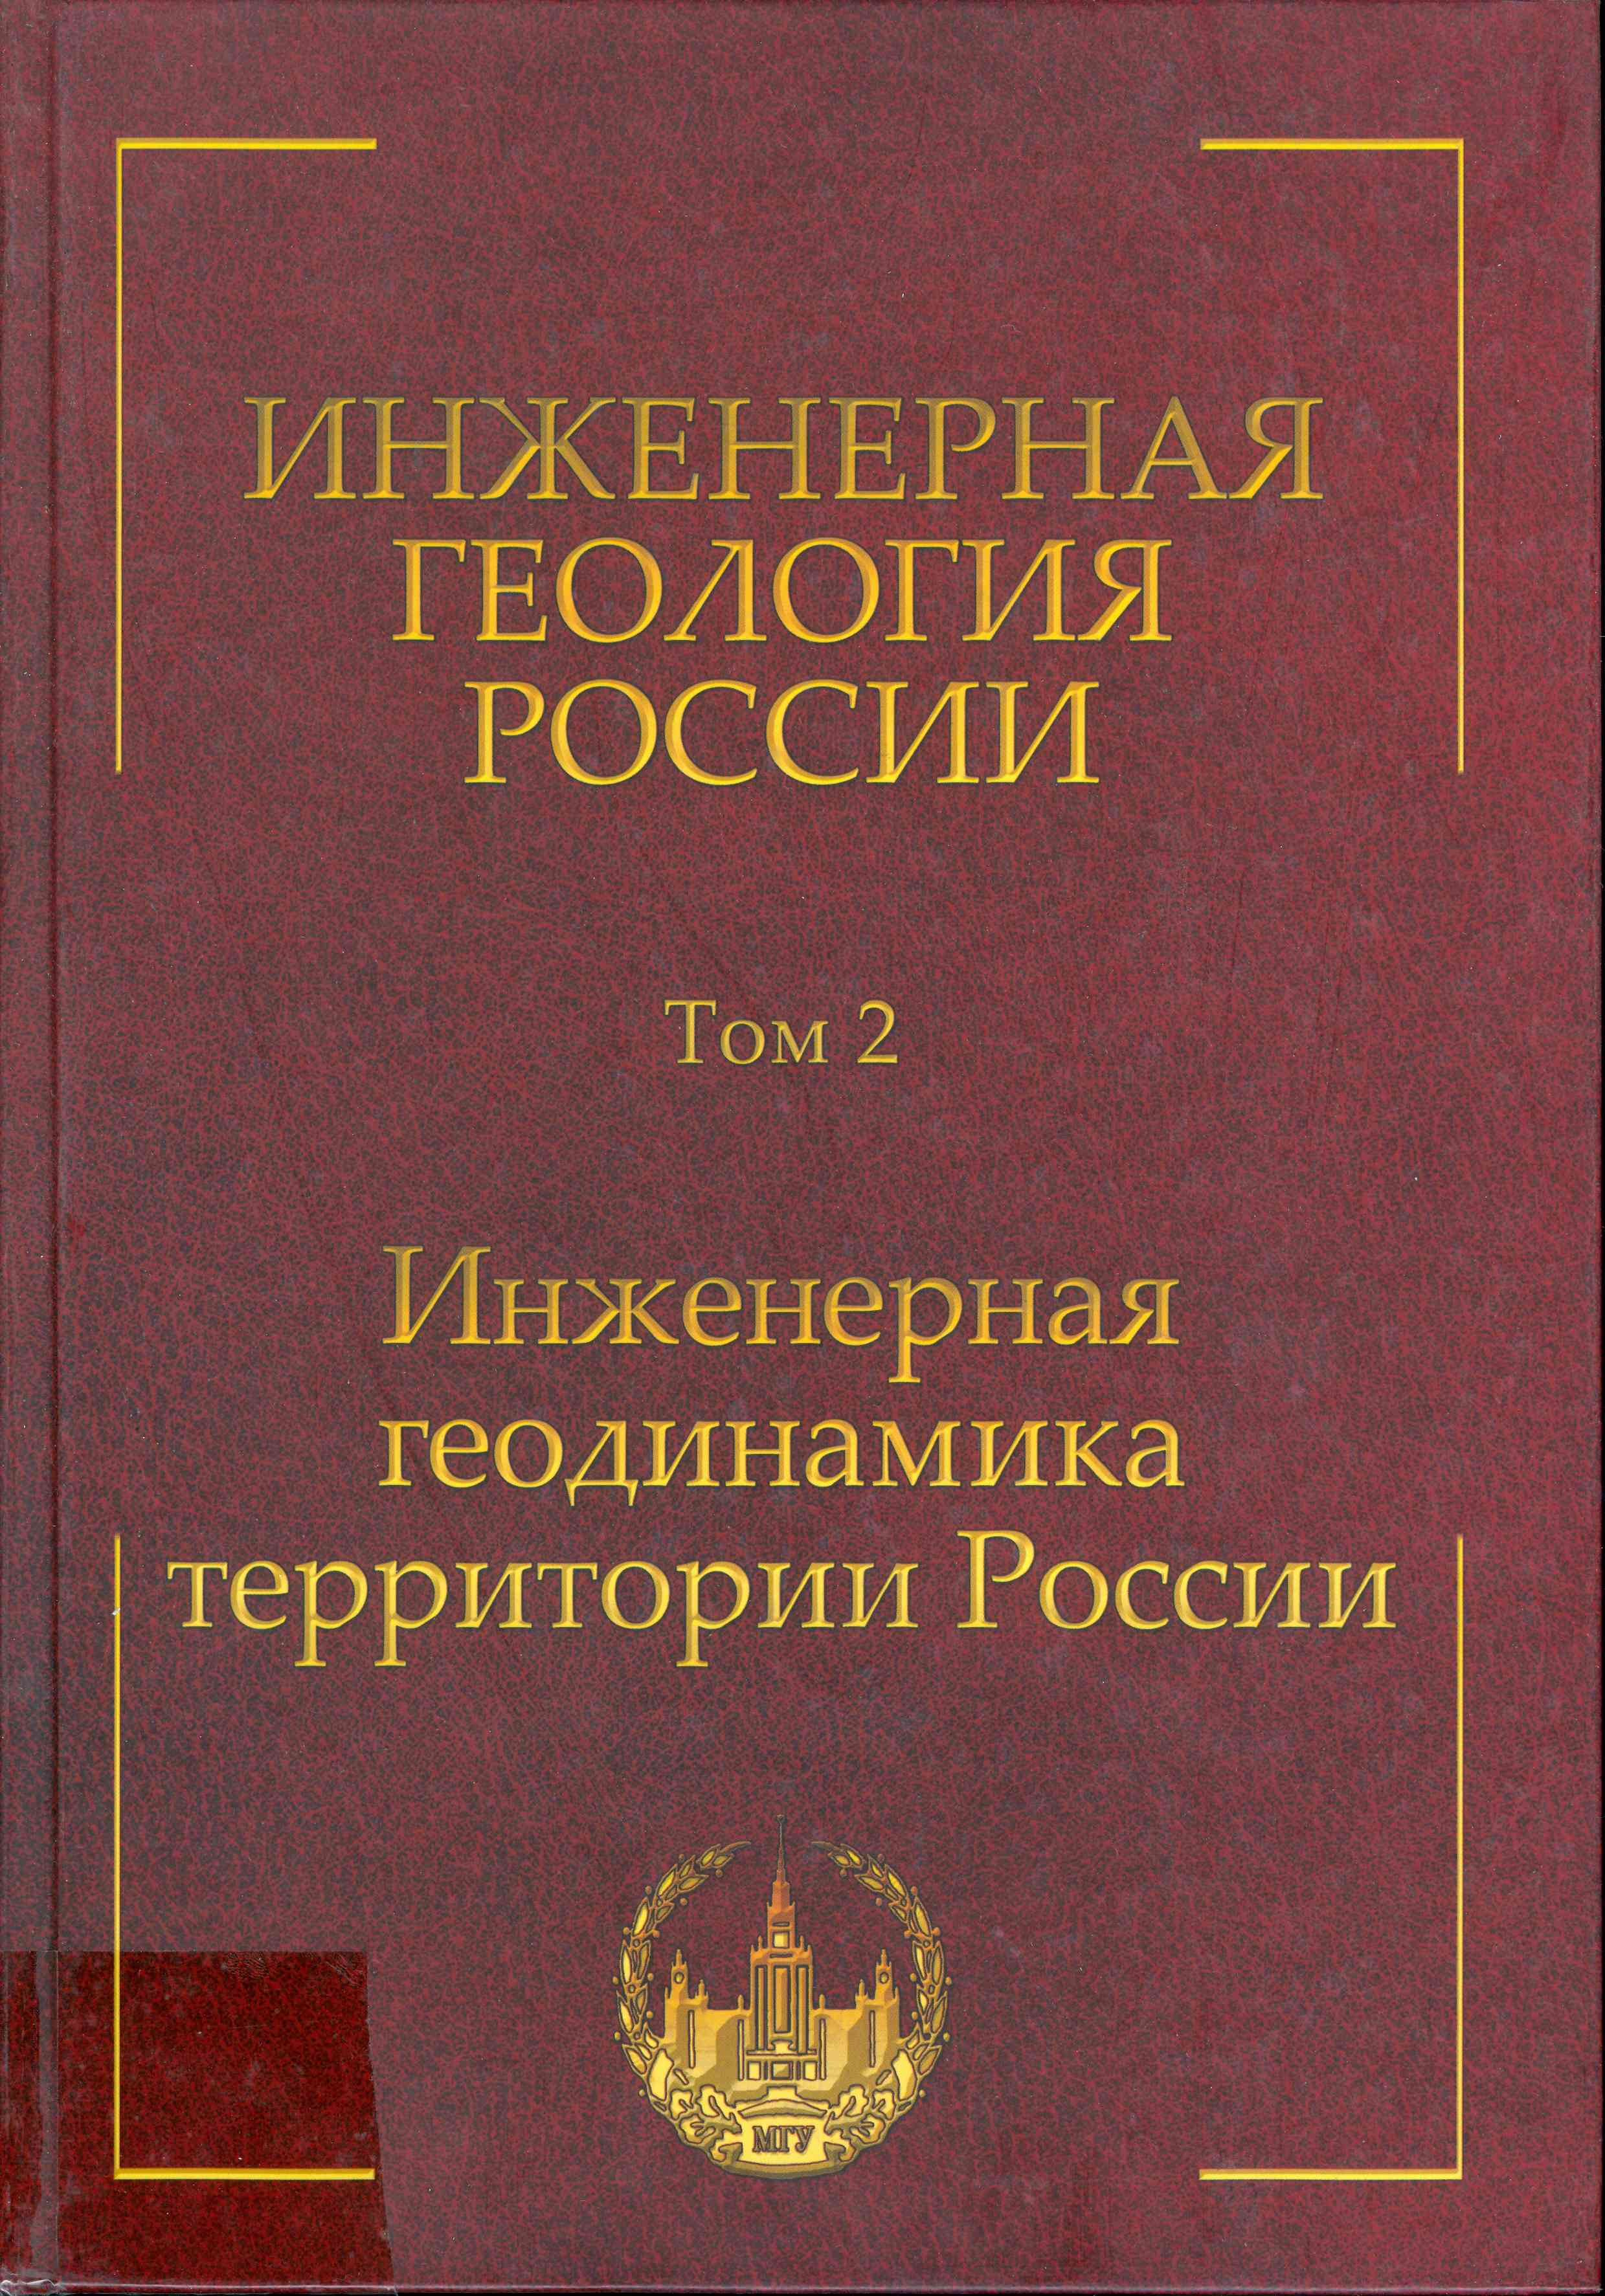 Обложка Инженерная геология России ;№2, Инженерная геодинамика территории России  2013